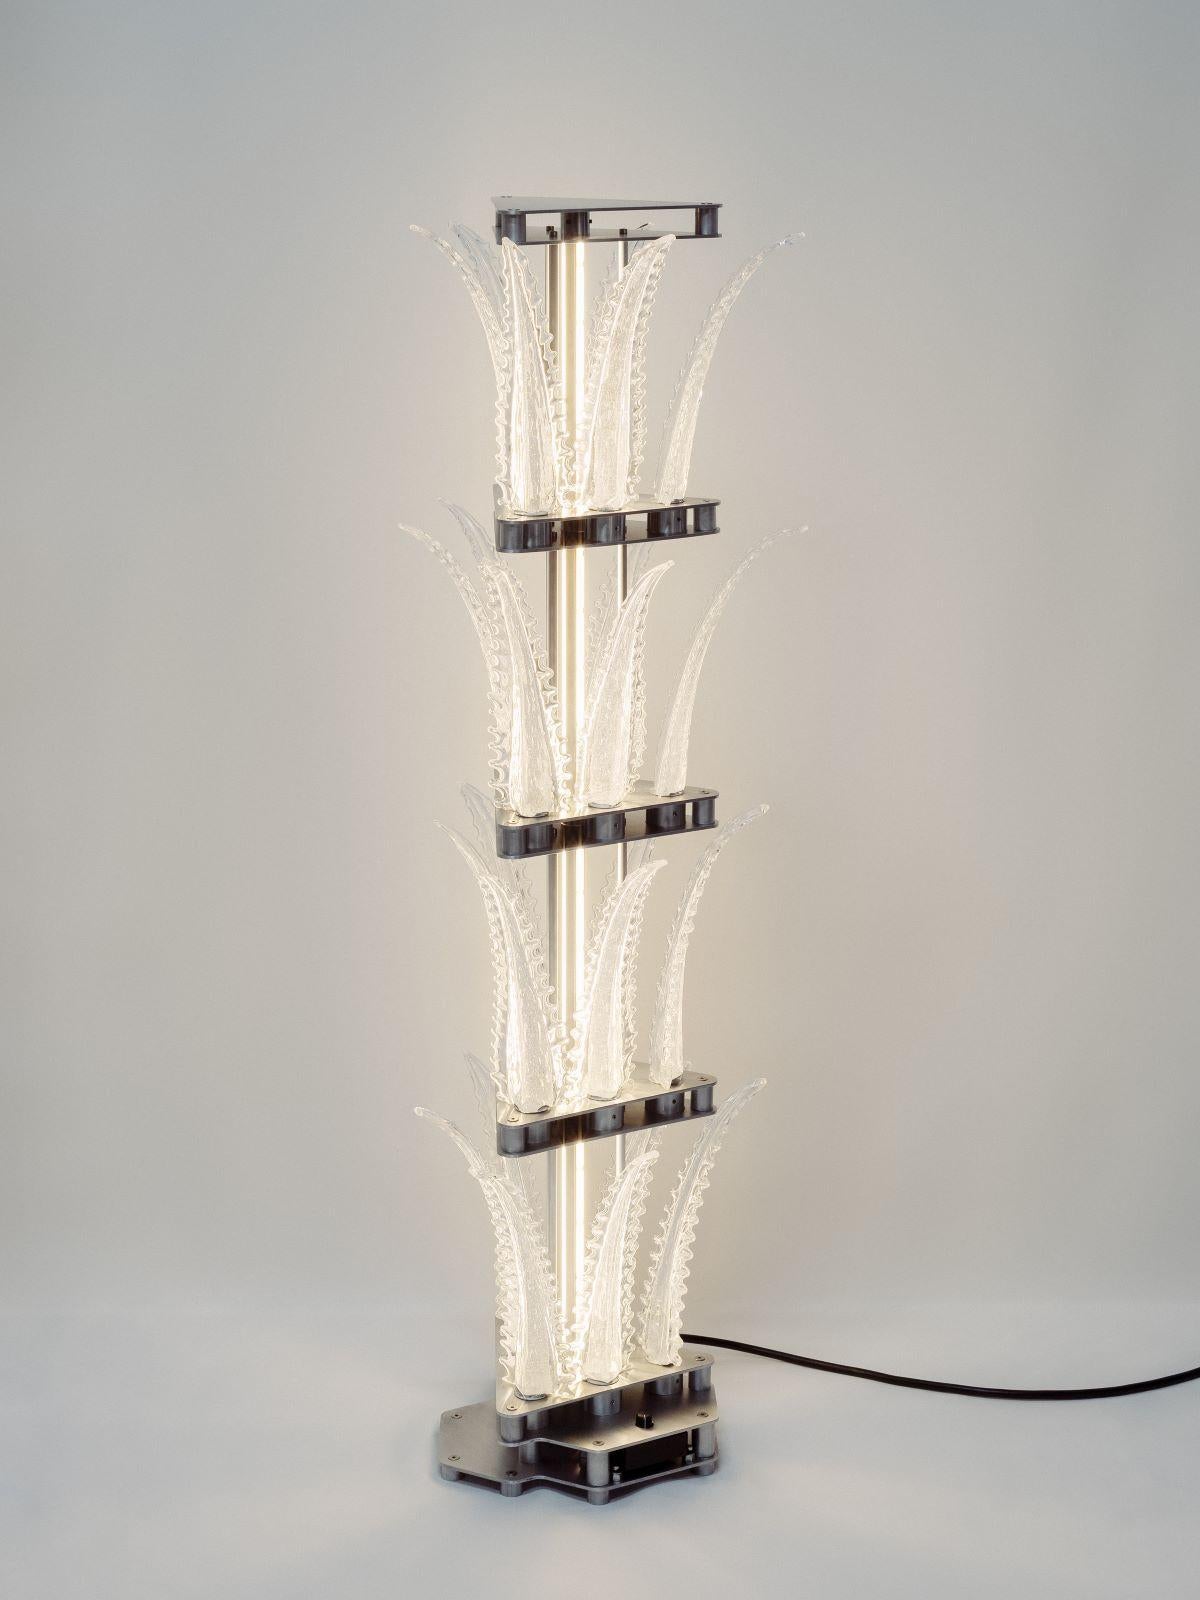 Ce superbe lampadaire fait partie de la collection Talar, une série réalisée en aluminium et en verre de Murano par Wave Murano Glass et le duo de designers Scattered Disc Objects (SDOBJS). La structure générale s'inspire de l'architecture élancée